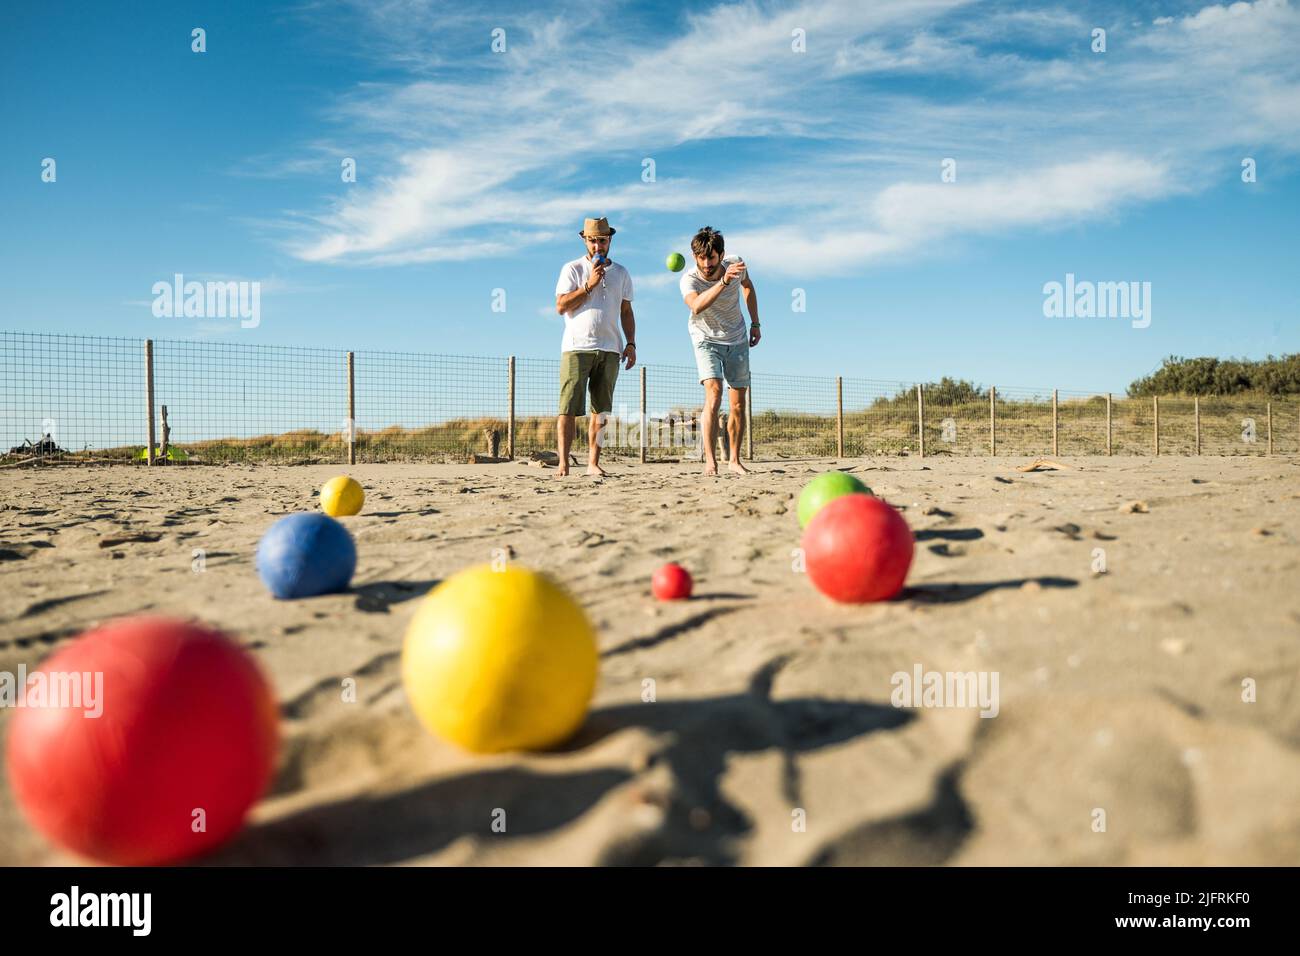 Les touristes jouent à un jeu actif, pétanque sur une plage de sable au bord de la mer - Groupe de jeunes jouant à la boule en plein air en vacances à la plage Banque D'Images